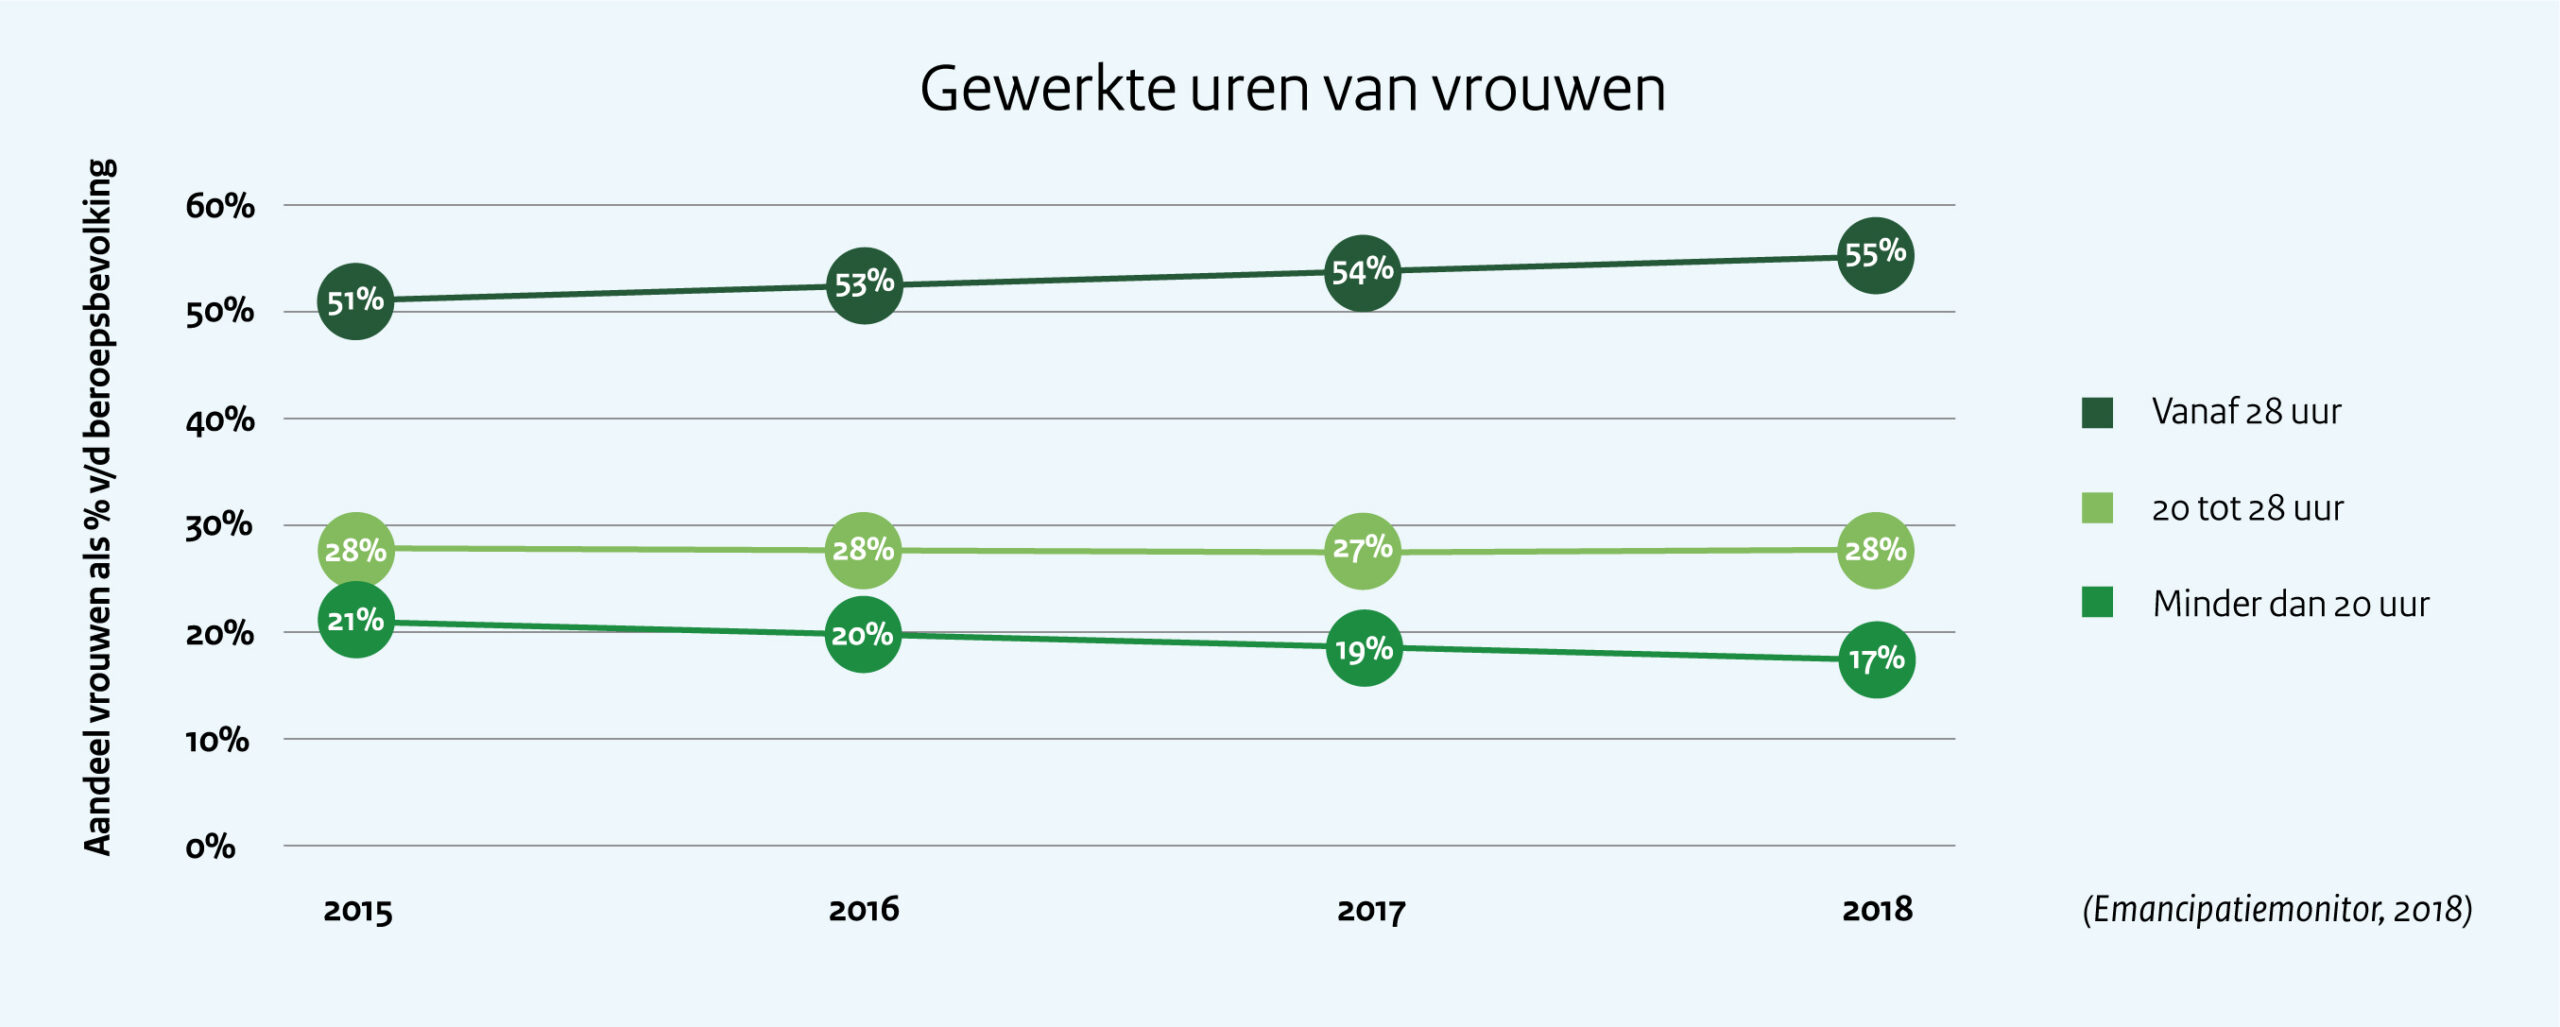 Gewerkte uren van vrouwen   In 2015 werkte 51% van de Nederlandse vrouwen 28 of meer uur per week; dit aandeel is tussen 2015 en 2018 met 4% toegenomen. Tussen 2015 en 2018 is het aandeel vrouwen dat 20 tot 28 uur per uur werkt, gelijk gebleven: 28%. Het aandeel vrouwen dat minder dan 20 uur werkt is tussen 2015 en 2018 gedaald: in 2015 ging het om 21% en in 2018 om 17%.  Deze cijfers komen uit de tiende Emancipatiemonitor van het CBS en het SCP, gepubliceerd in 2018. 